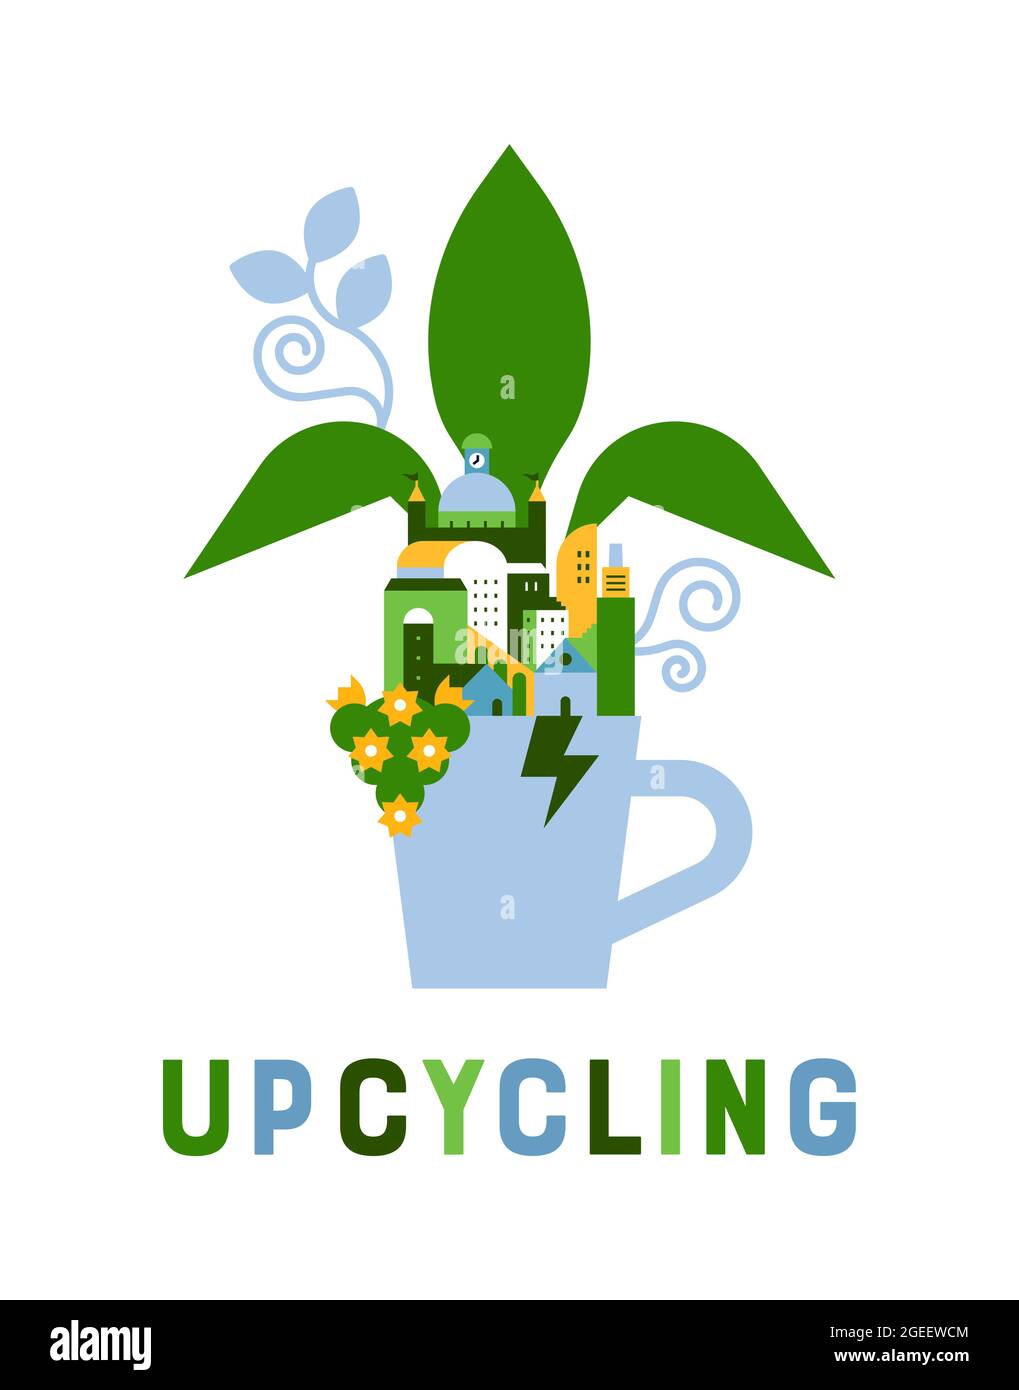 Upcycling illustrazione della tazza rotta riporita con la città verde che cresce all'interno. Eco-friendly upcycle concept in stile cartoon geometrico piatto su isolat Illustrazione Vettoriale